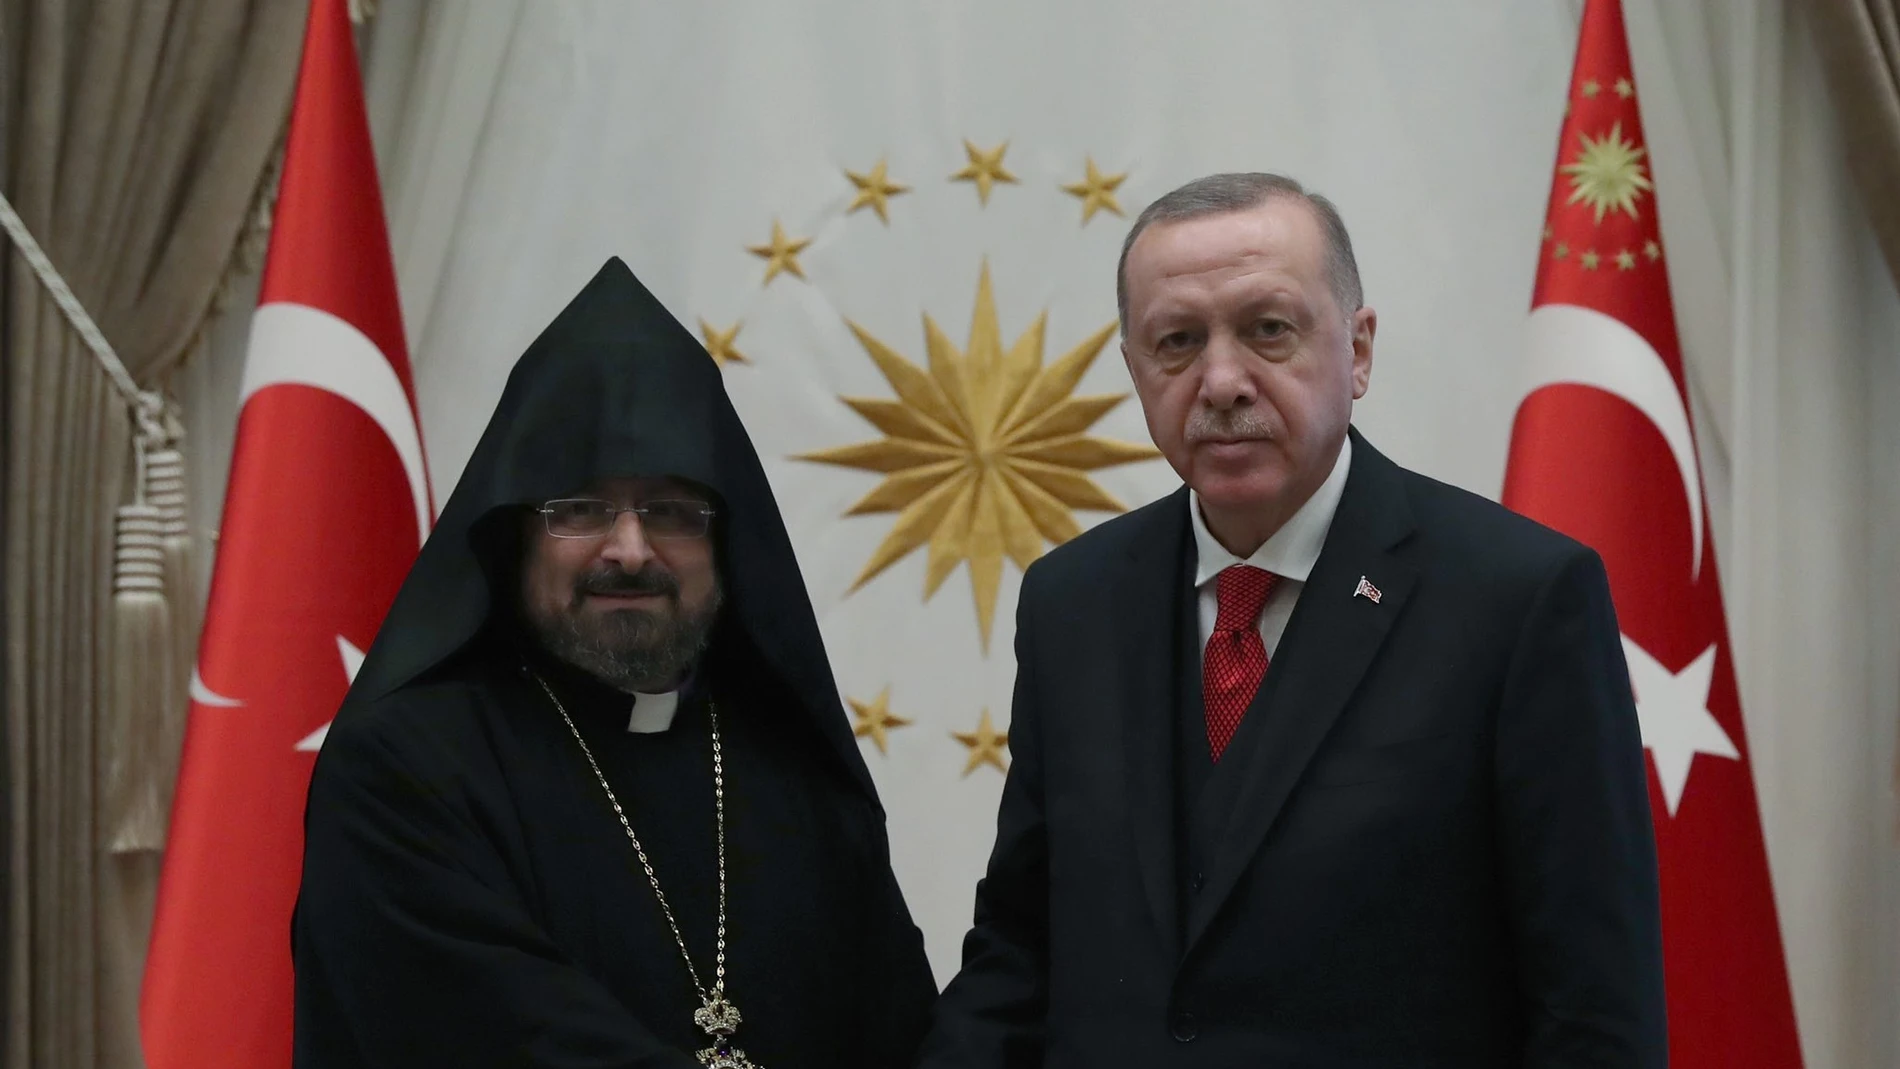 El sorprendente parecido de Jordi Évole con un patriarca armenio